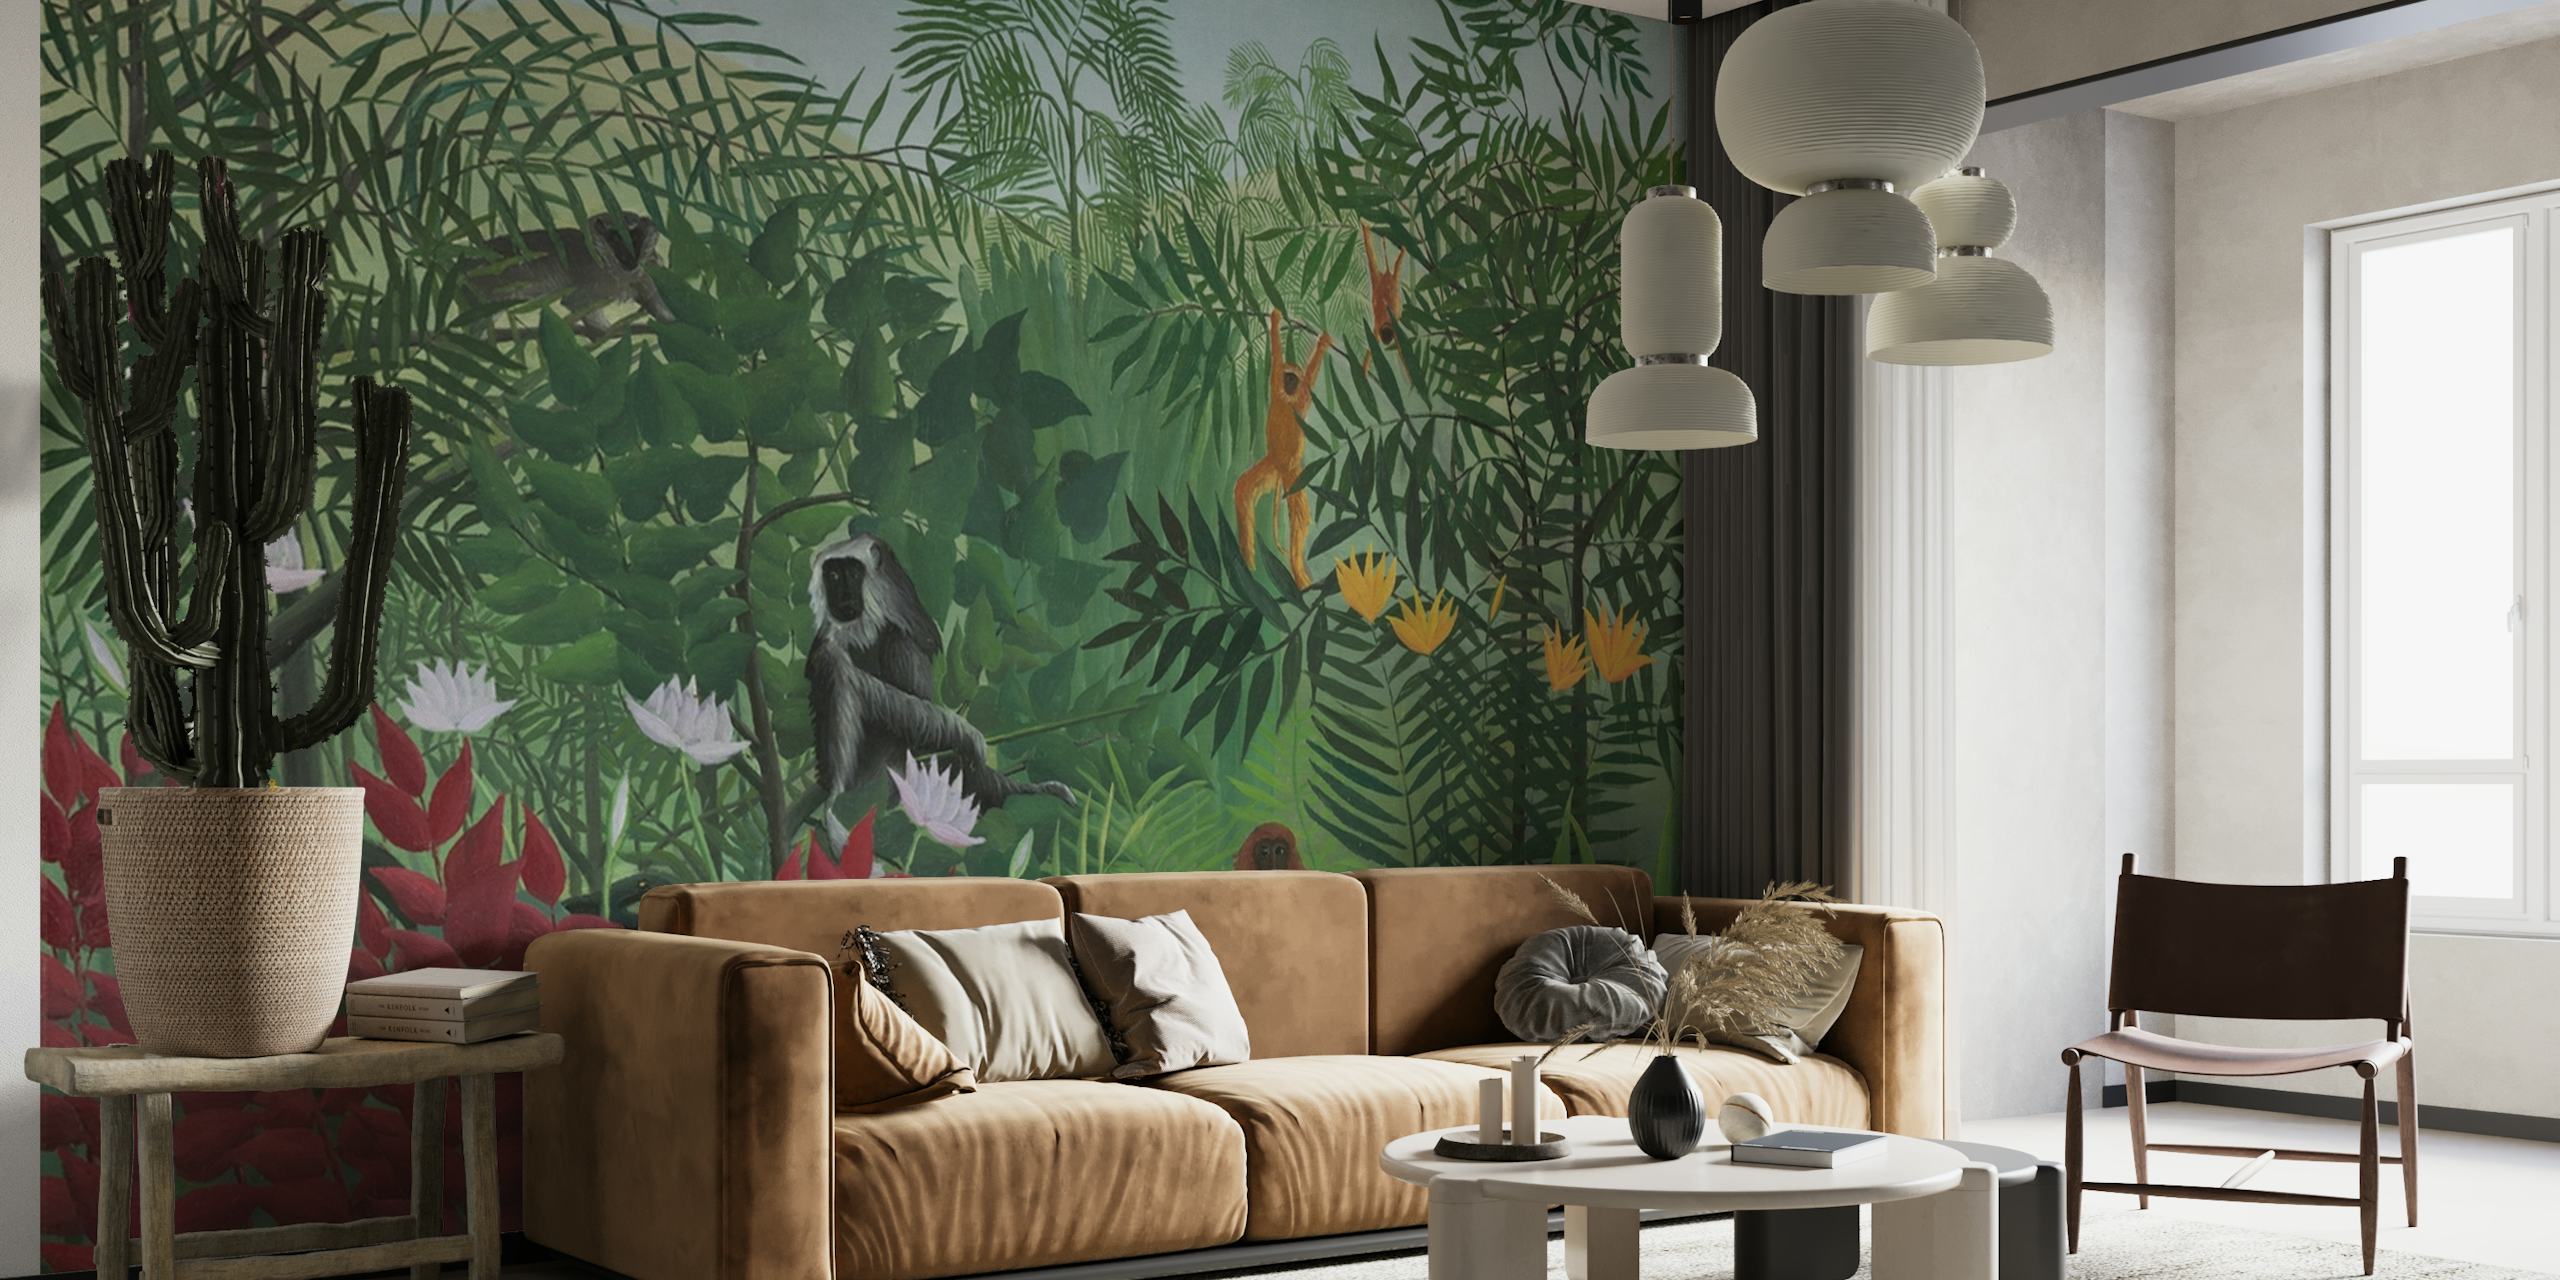 Mural de parede representando uma cena de floresta tropical com macacos, inspirado no estilo artístico de Henri Rousseau.